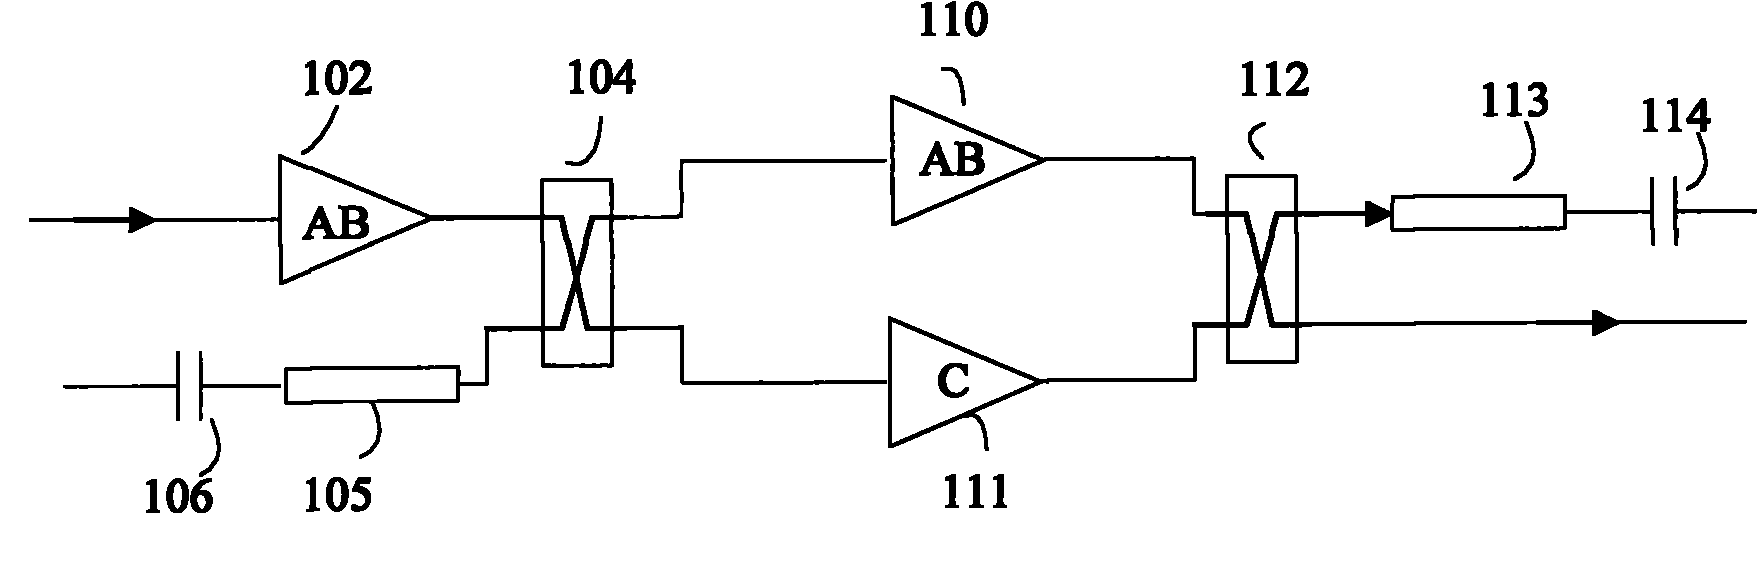 Efficient linear power amplifier circuit